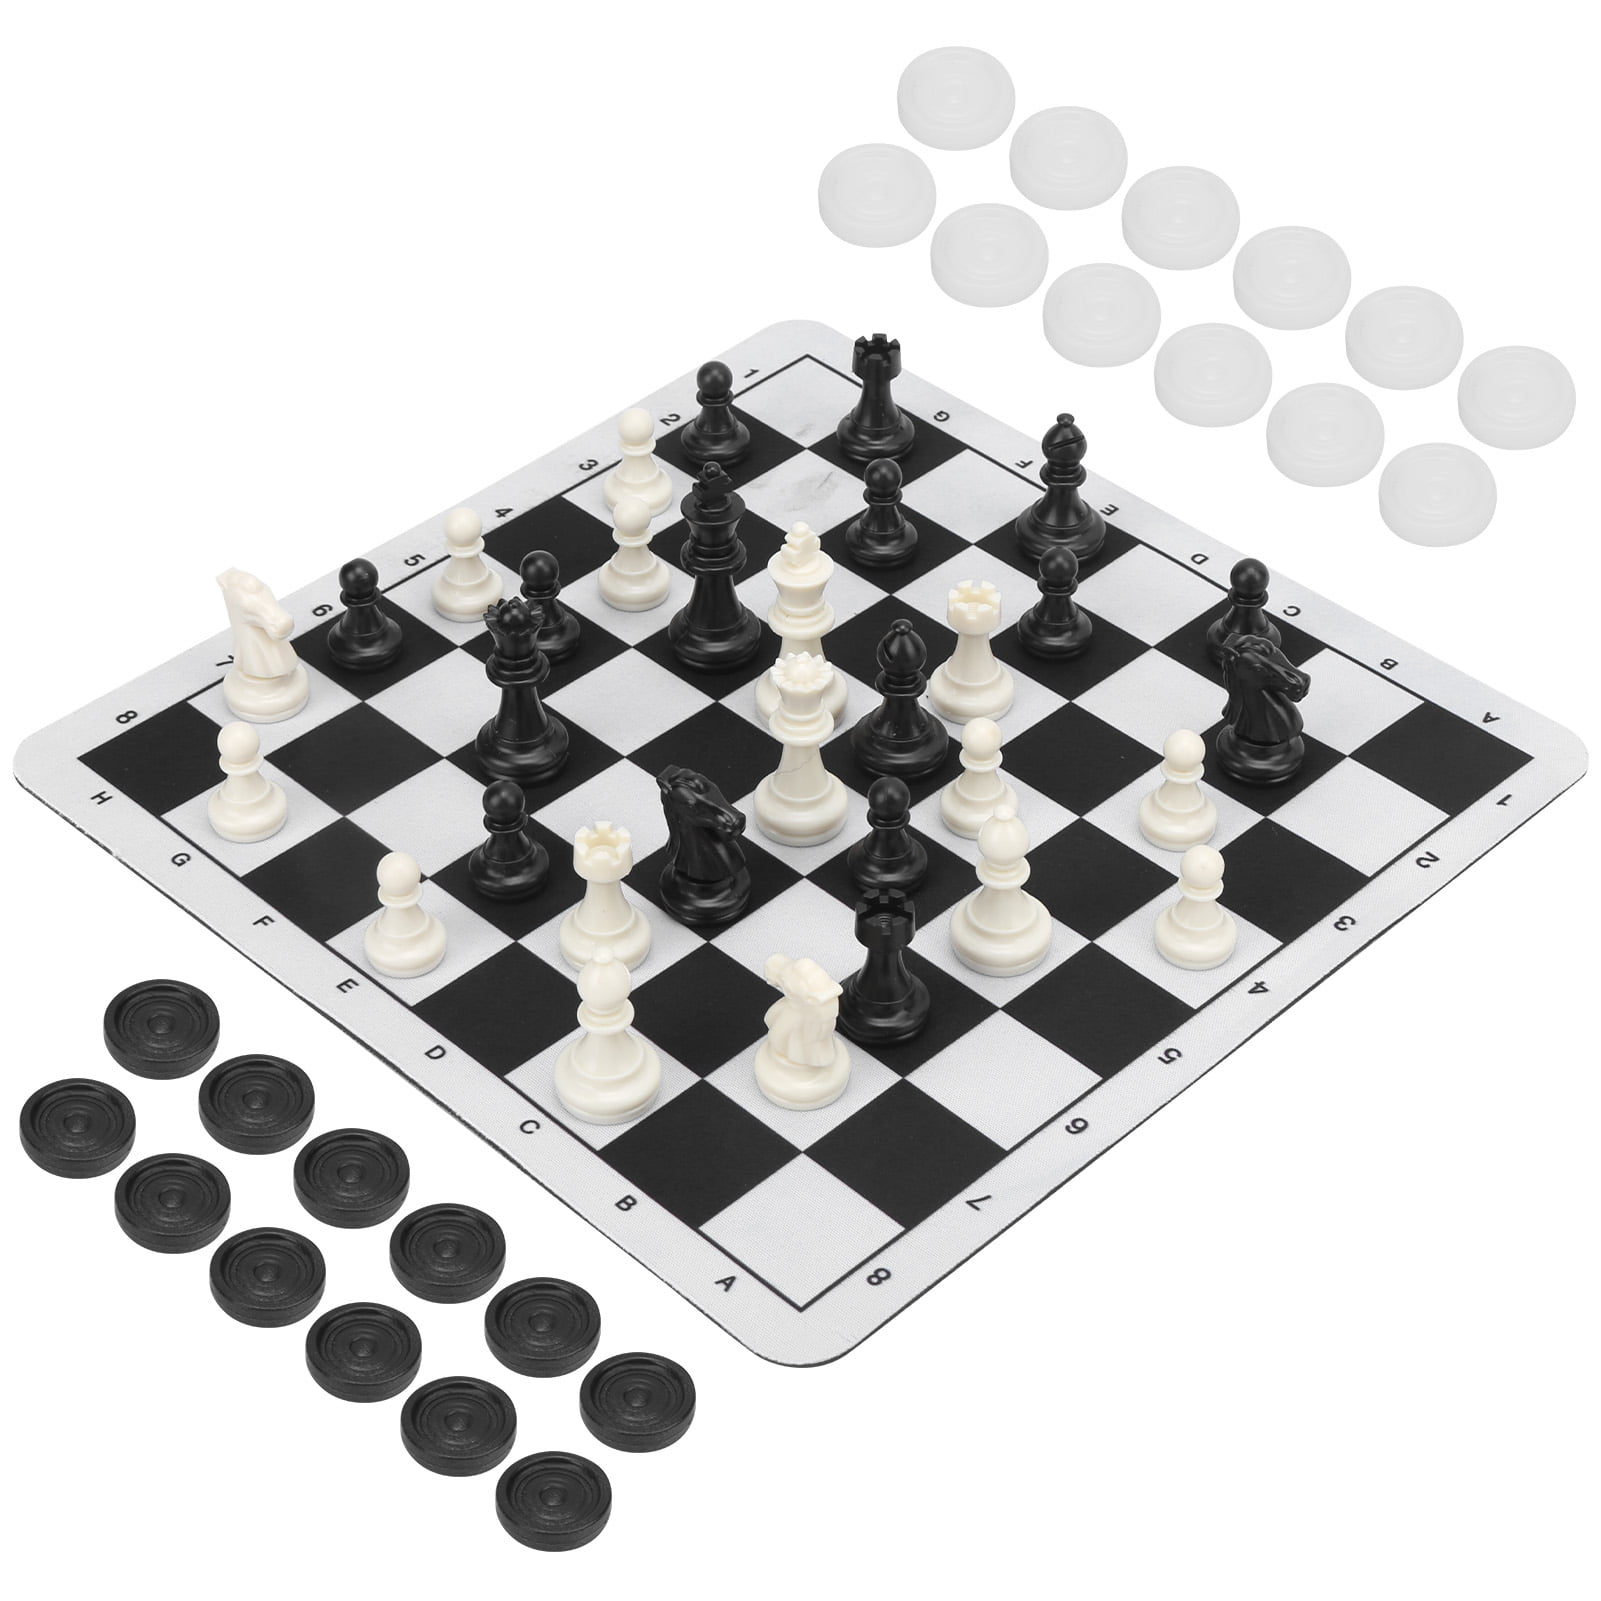 2 1/2 MoW Classics Ebonized Executive French Staunton Chess Pieces